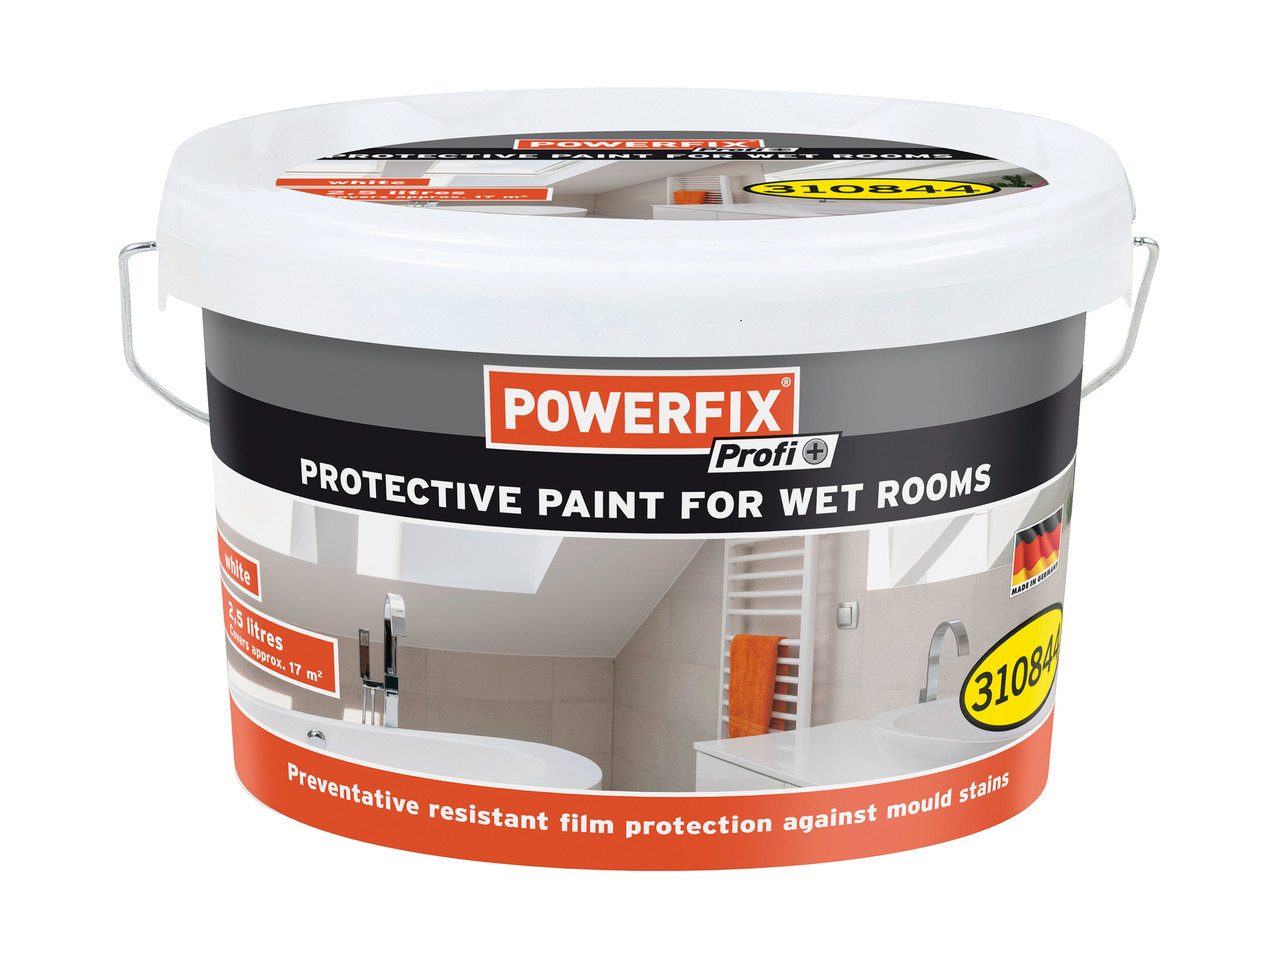 Powerfix Profi Protective Paint for Wet Rooms1